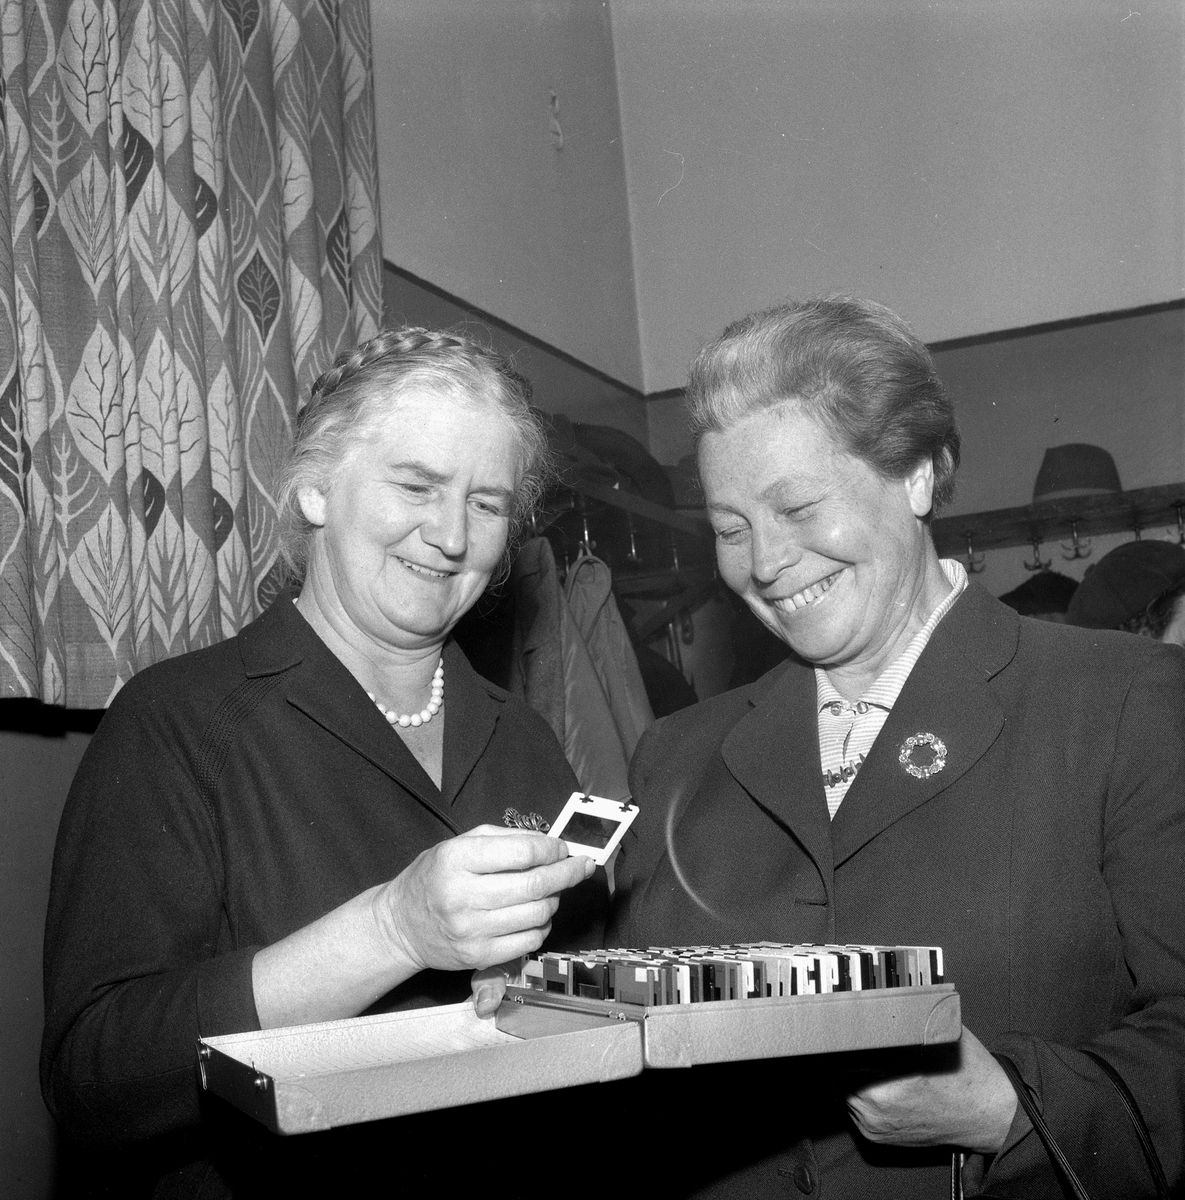 Lisa J. och Märta Adolfsson.
15 november 1958.